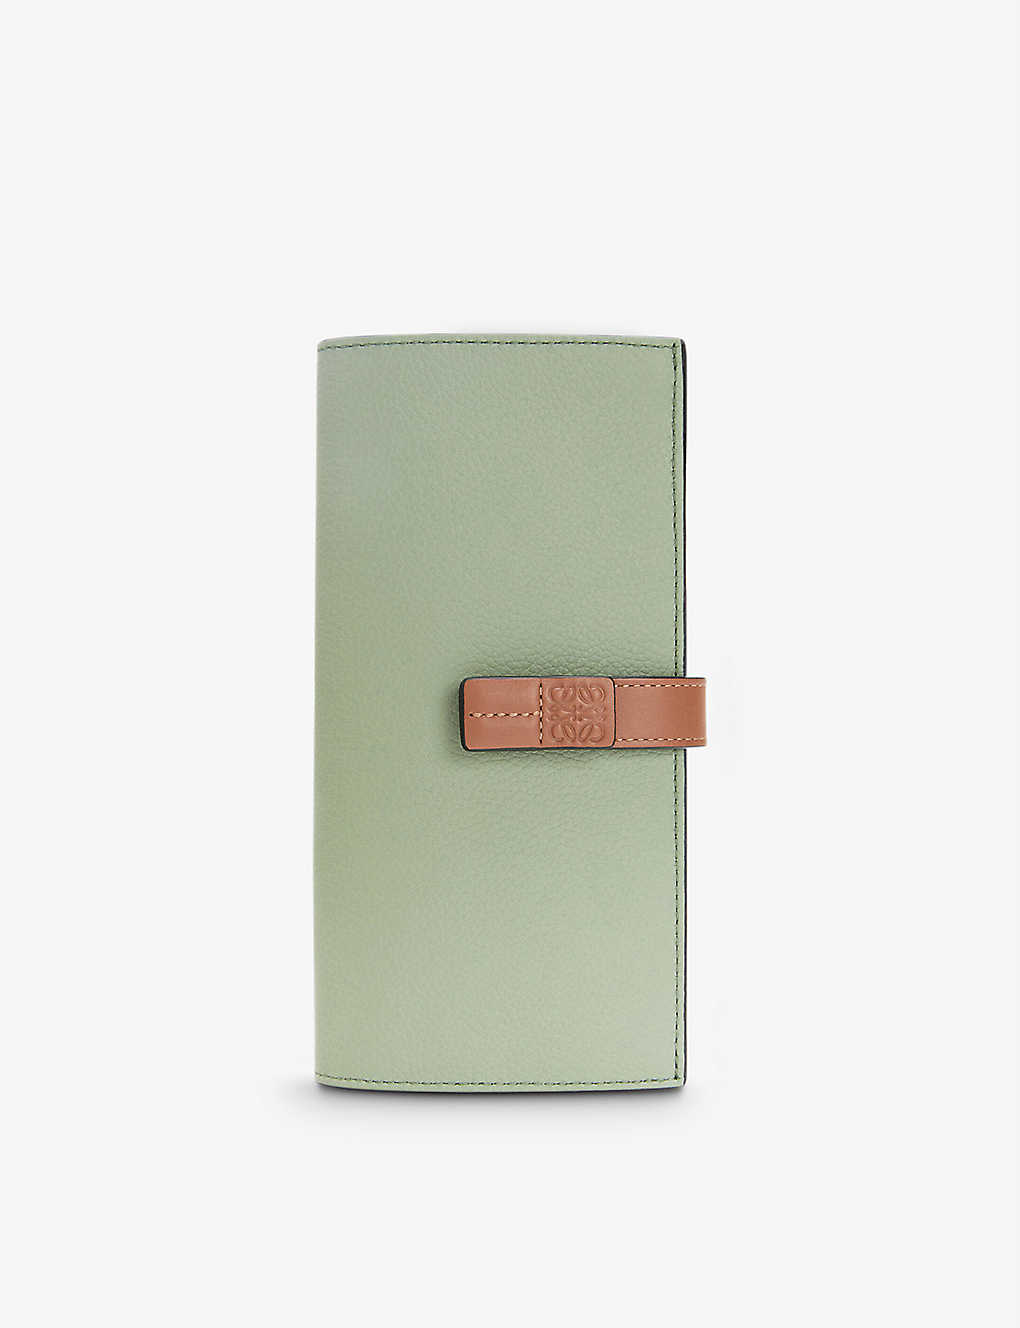 Loewe Vertical Large Leather Wallet In Rosemary/tan